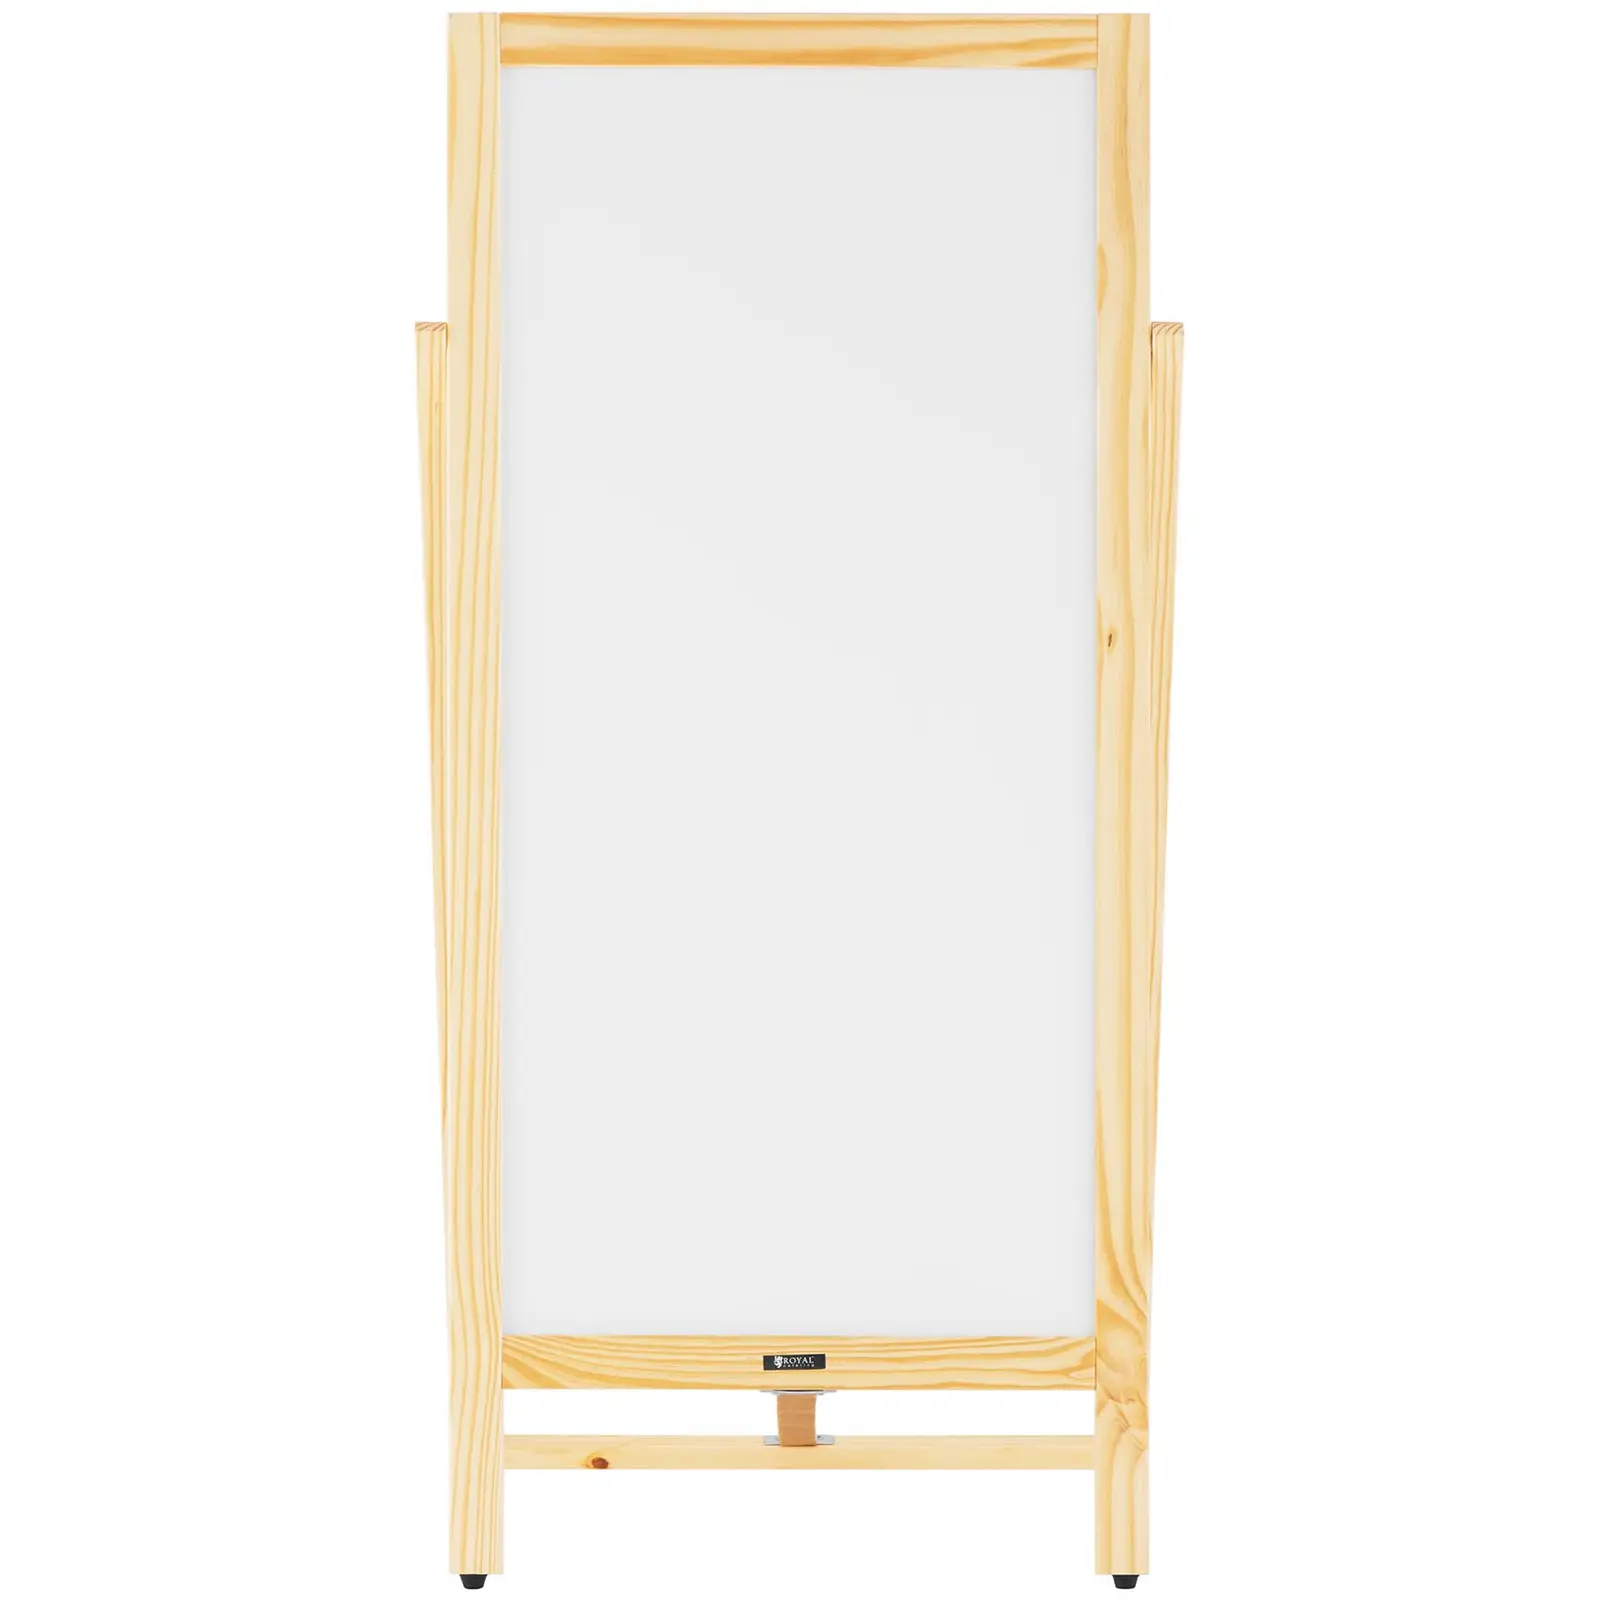 Sandwich Board - 450 mm x 900 mm - magnetic & writable whiteboard